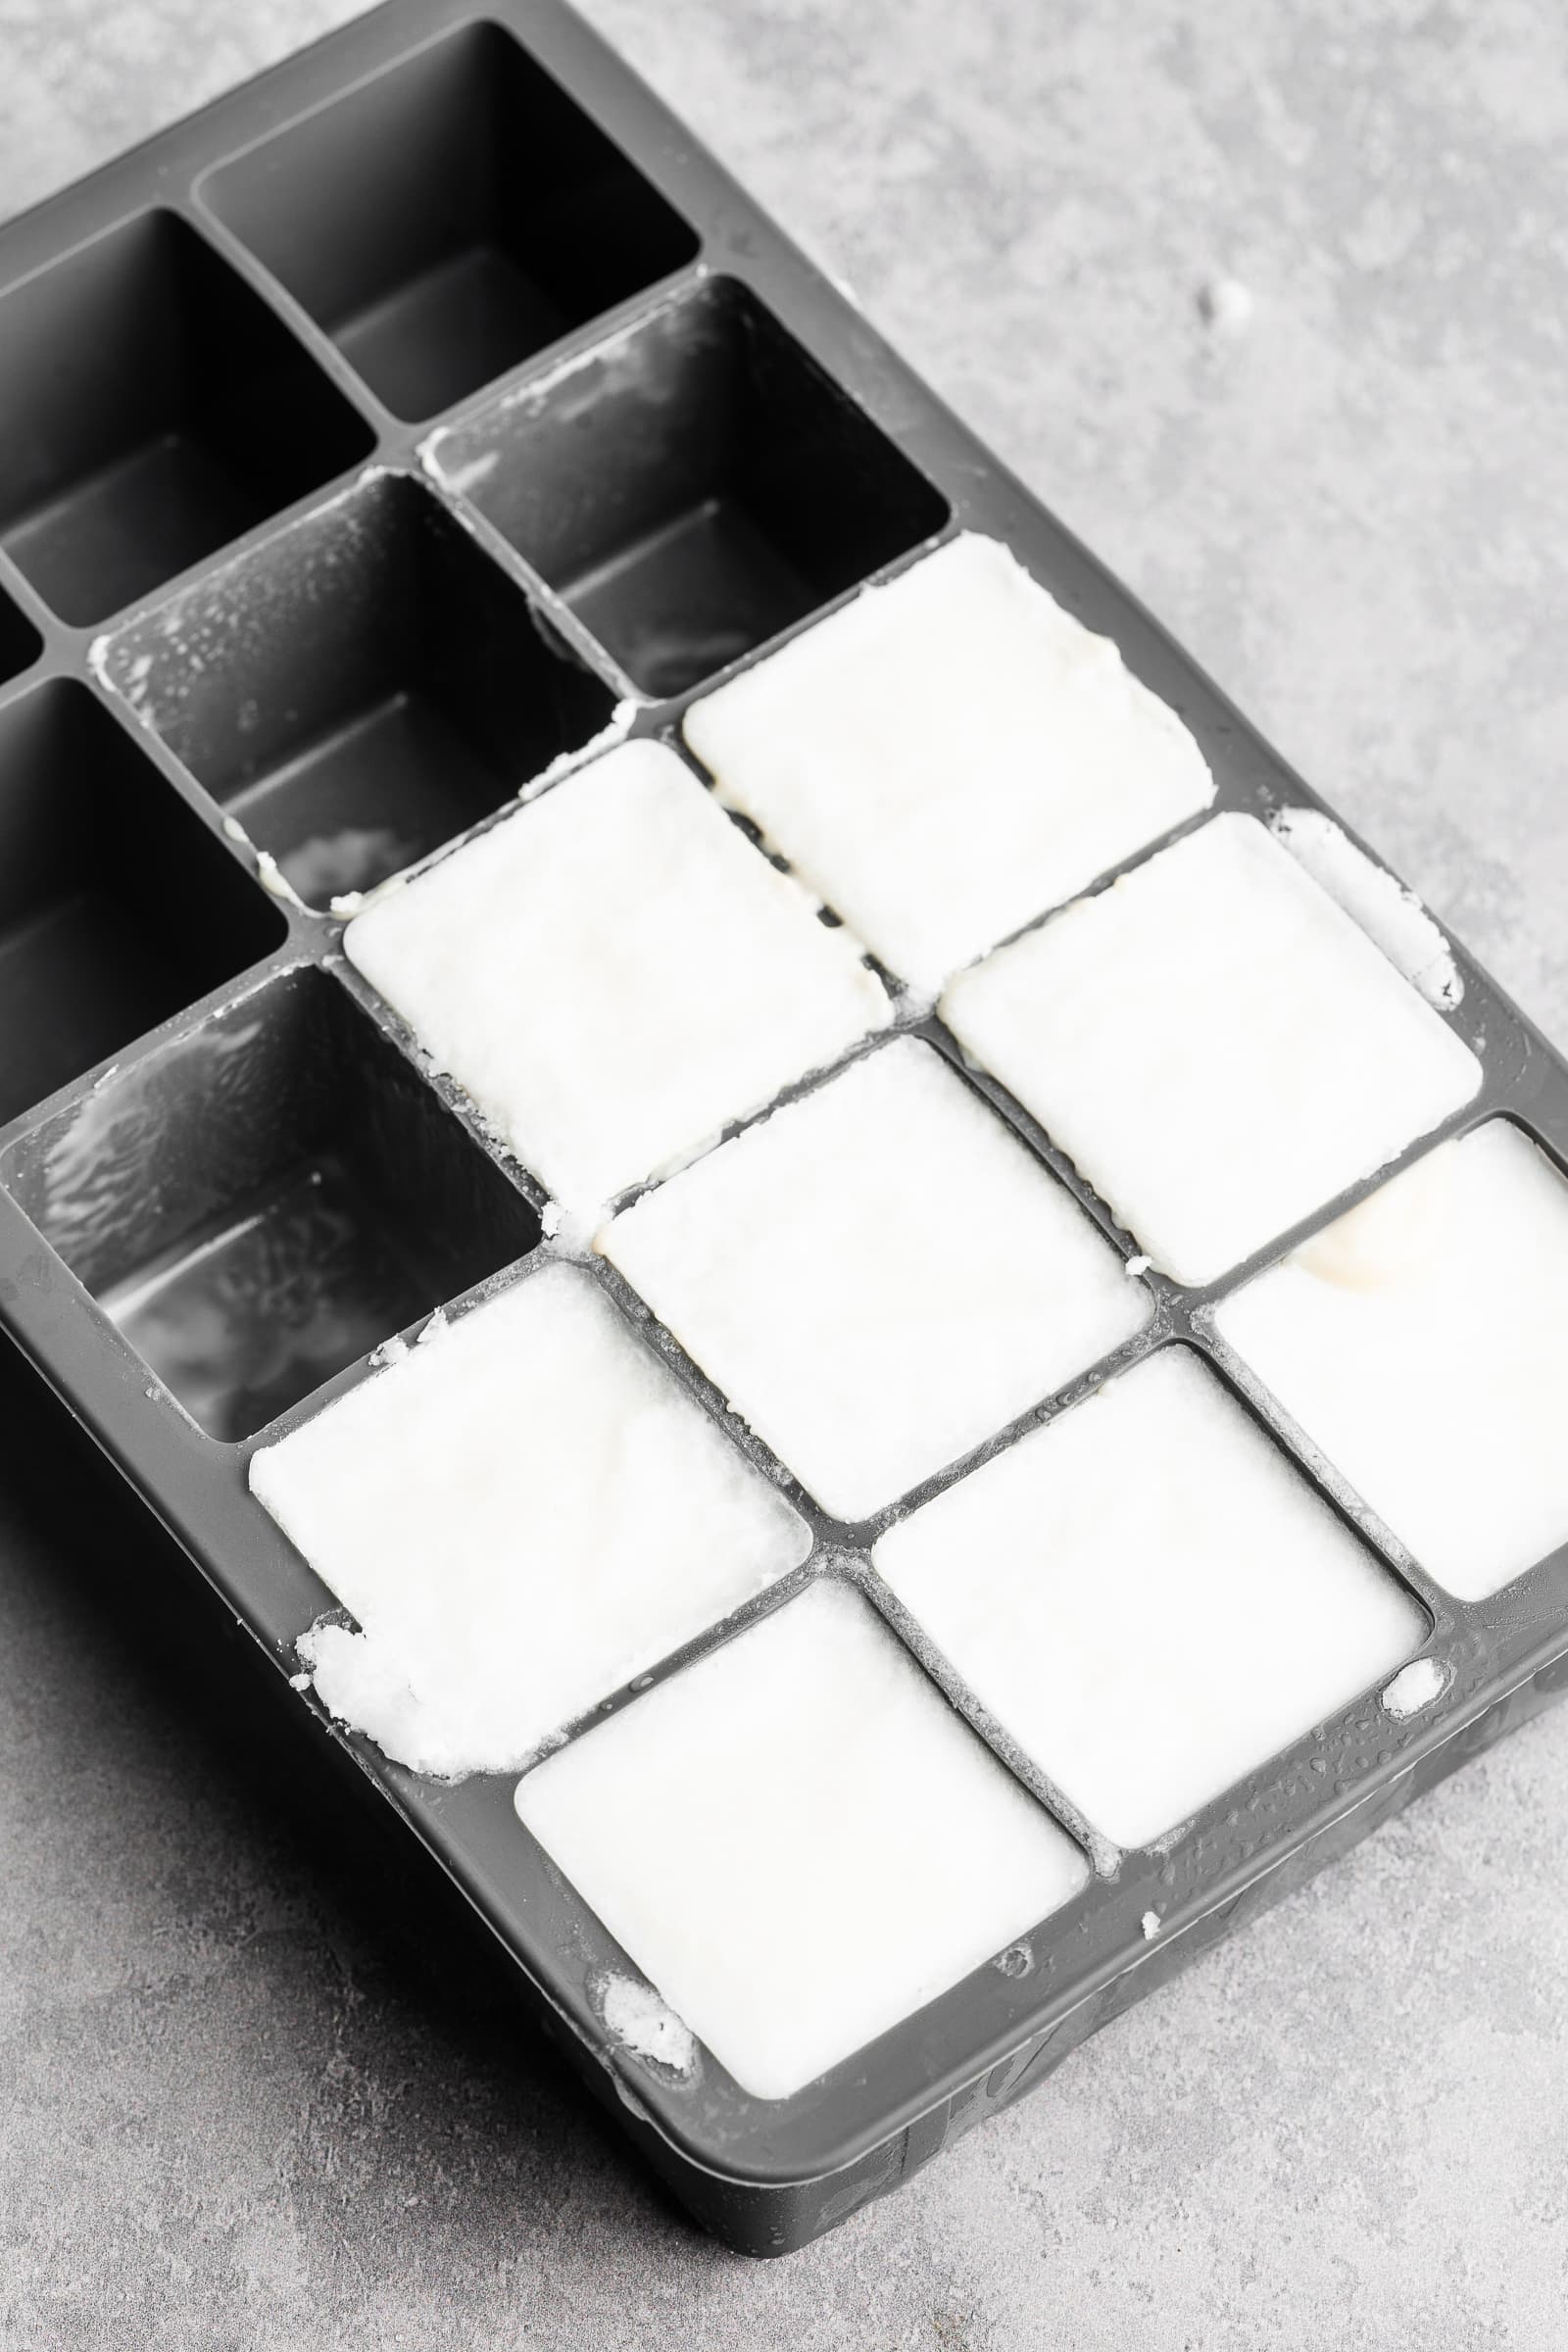 Frozen coconut milk in an ice cube trays.